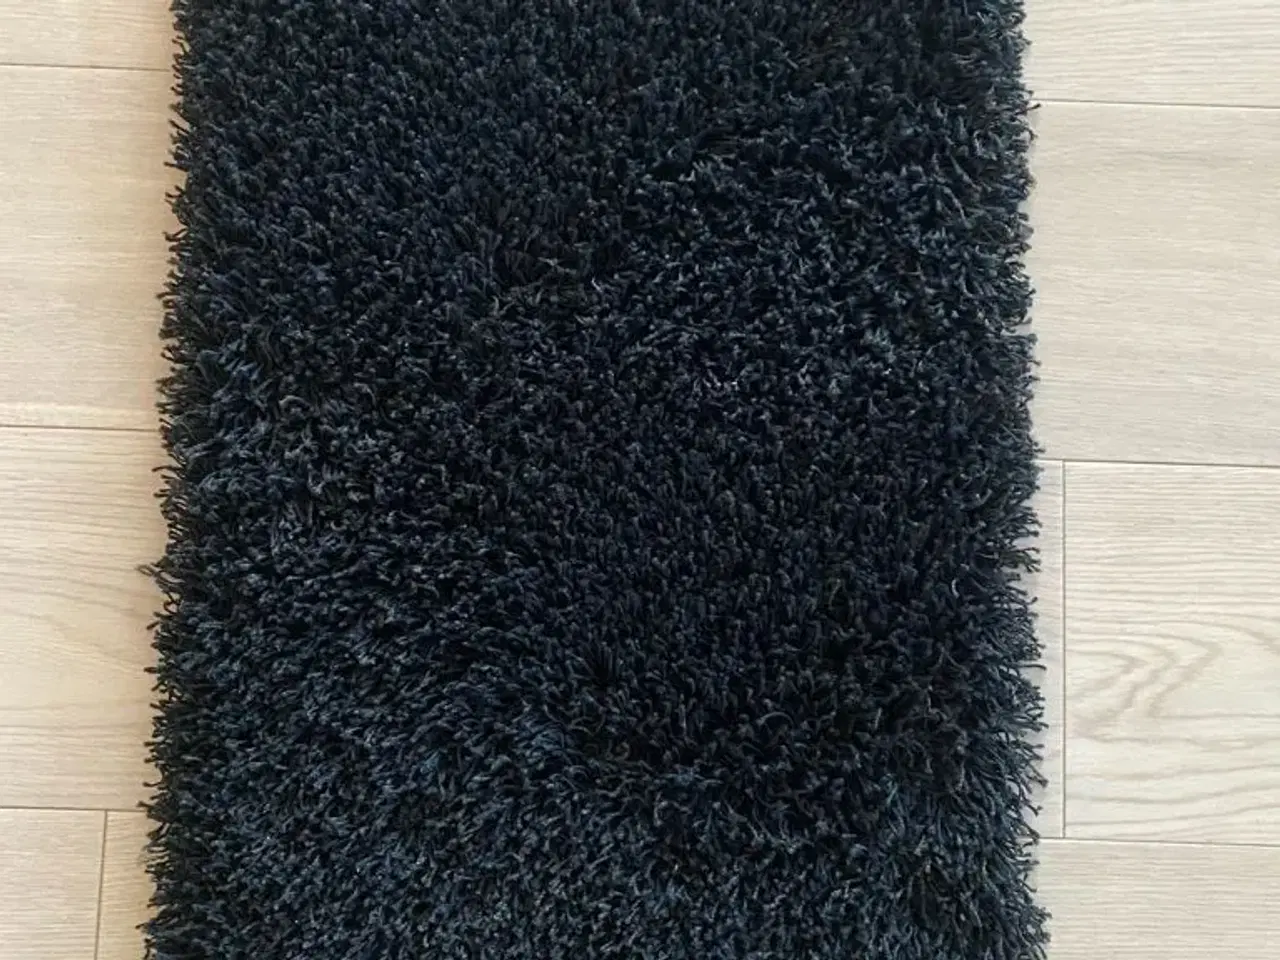 Billede 3 - Sort rya tæppe fra røg/dyrefrit hjem